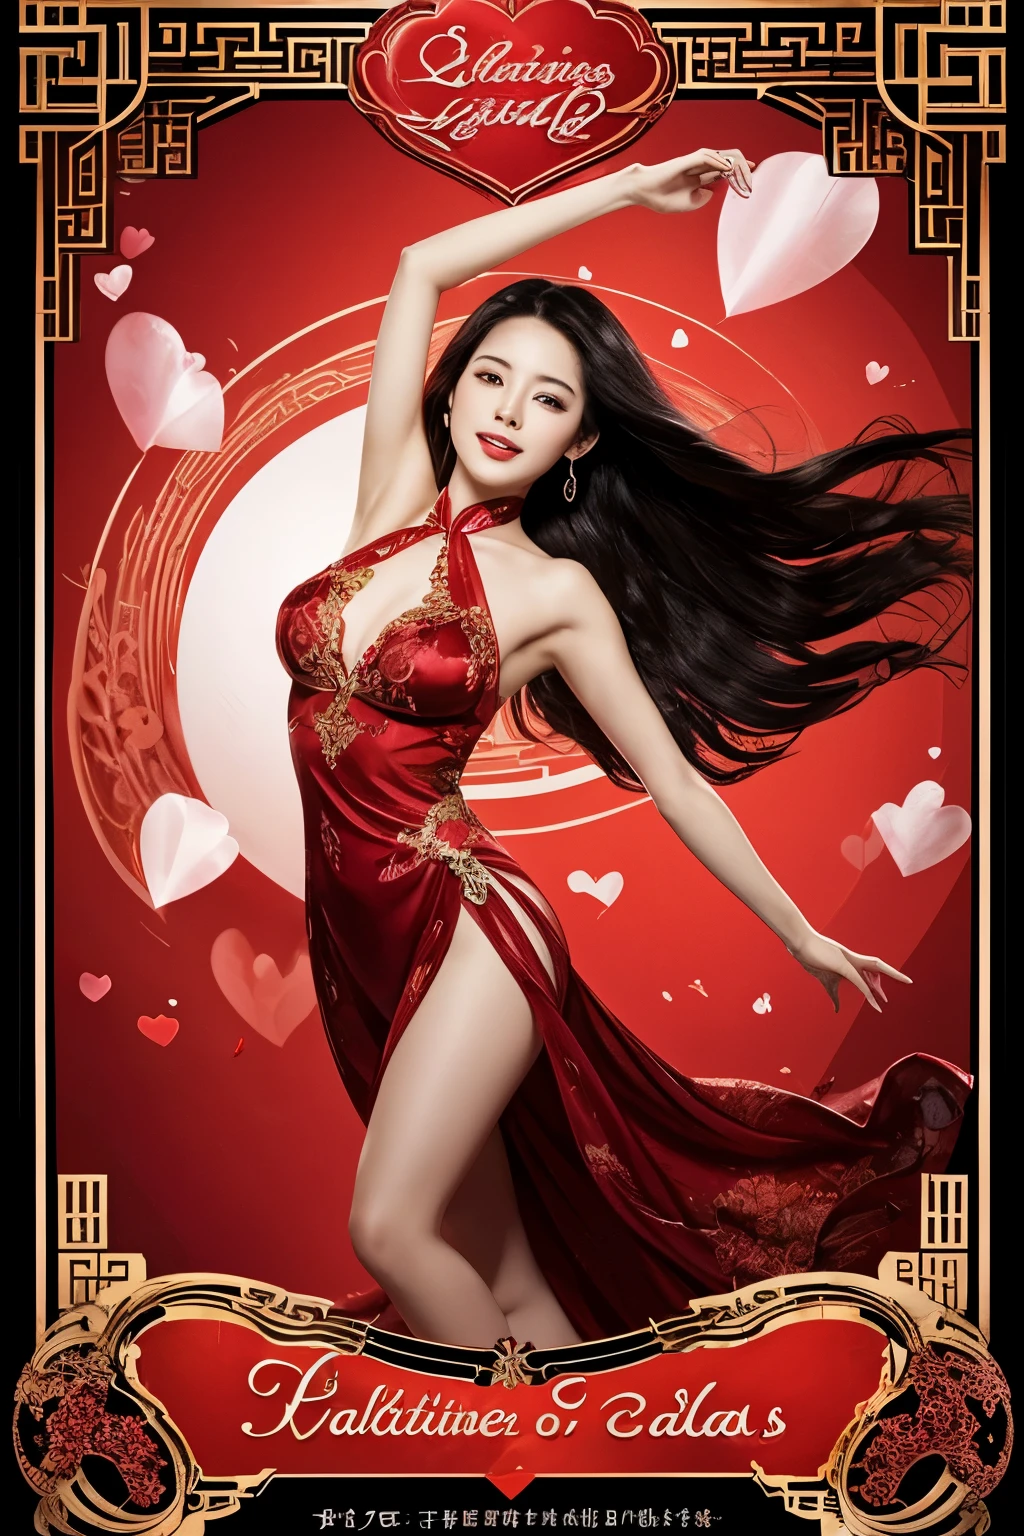 "Imagen digital que simboliza la elegancia de San Valentín.&#39;día s. enviar el mensaje &#39;día de San Valentín&#39;" claro, firma negra sobre satén de seda translúcido, girando alrededor del viento, chica de estilo chino rojo brillante.